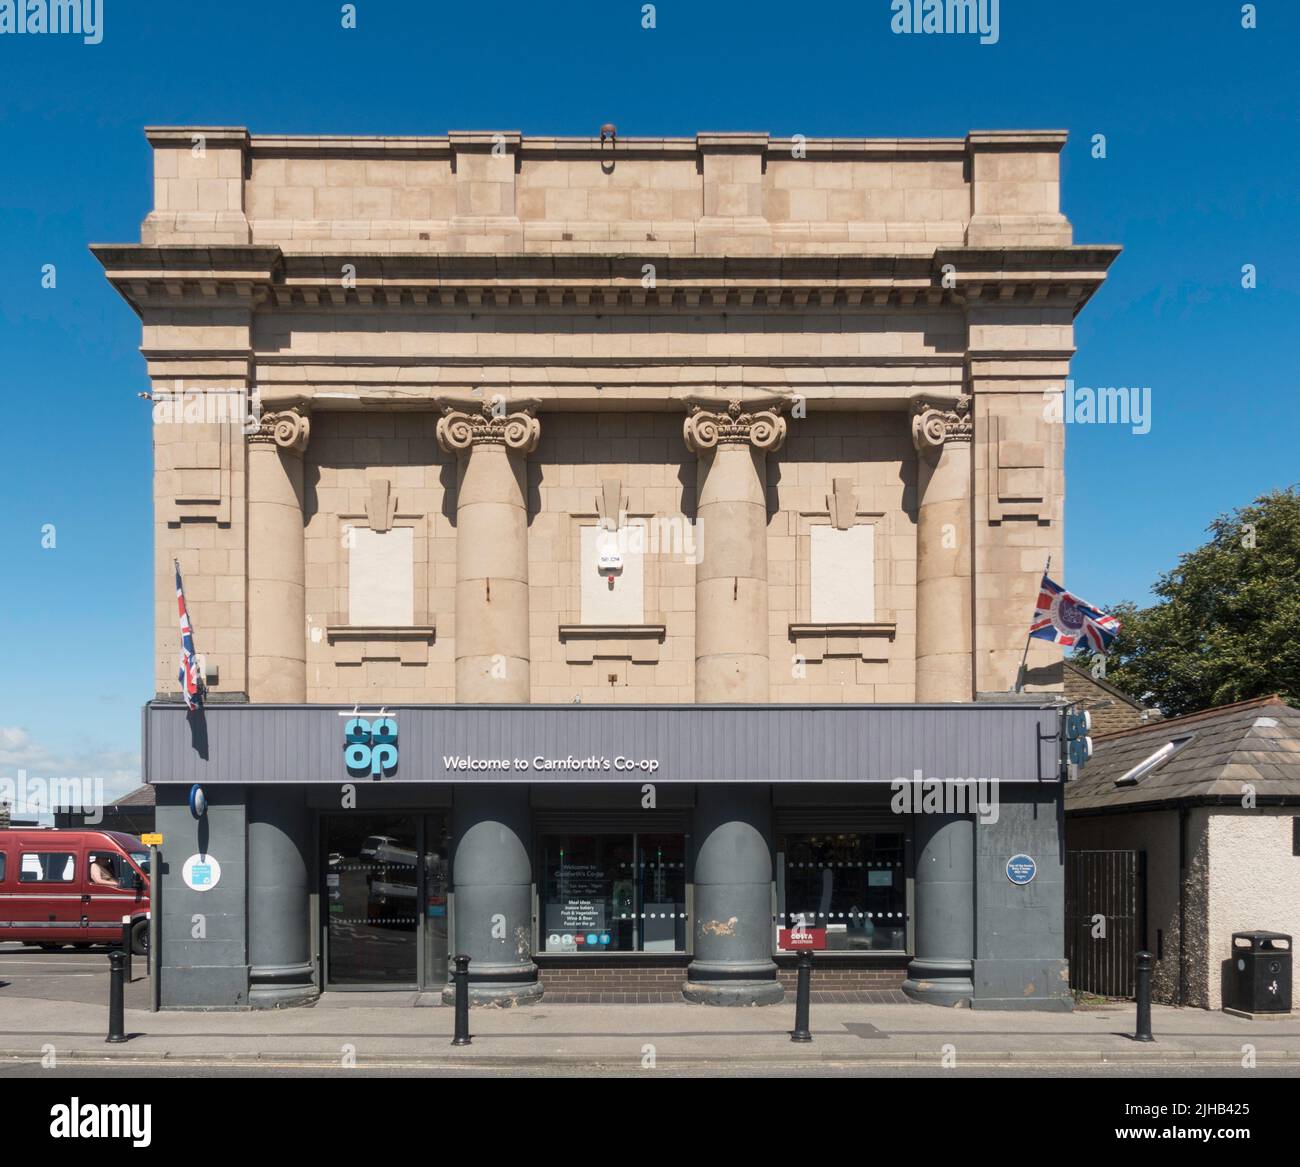 Il nuovo Kinema ha cambiato nome nell'edificio Roxy Cinema, ora un negozio Co-op, a Carnforth, Lancashire, Inghilterra, Regno Unito Foto Stock